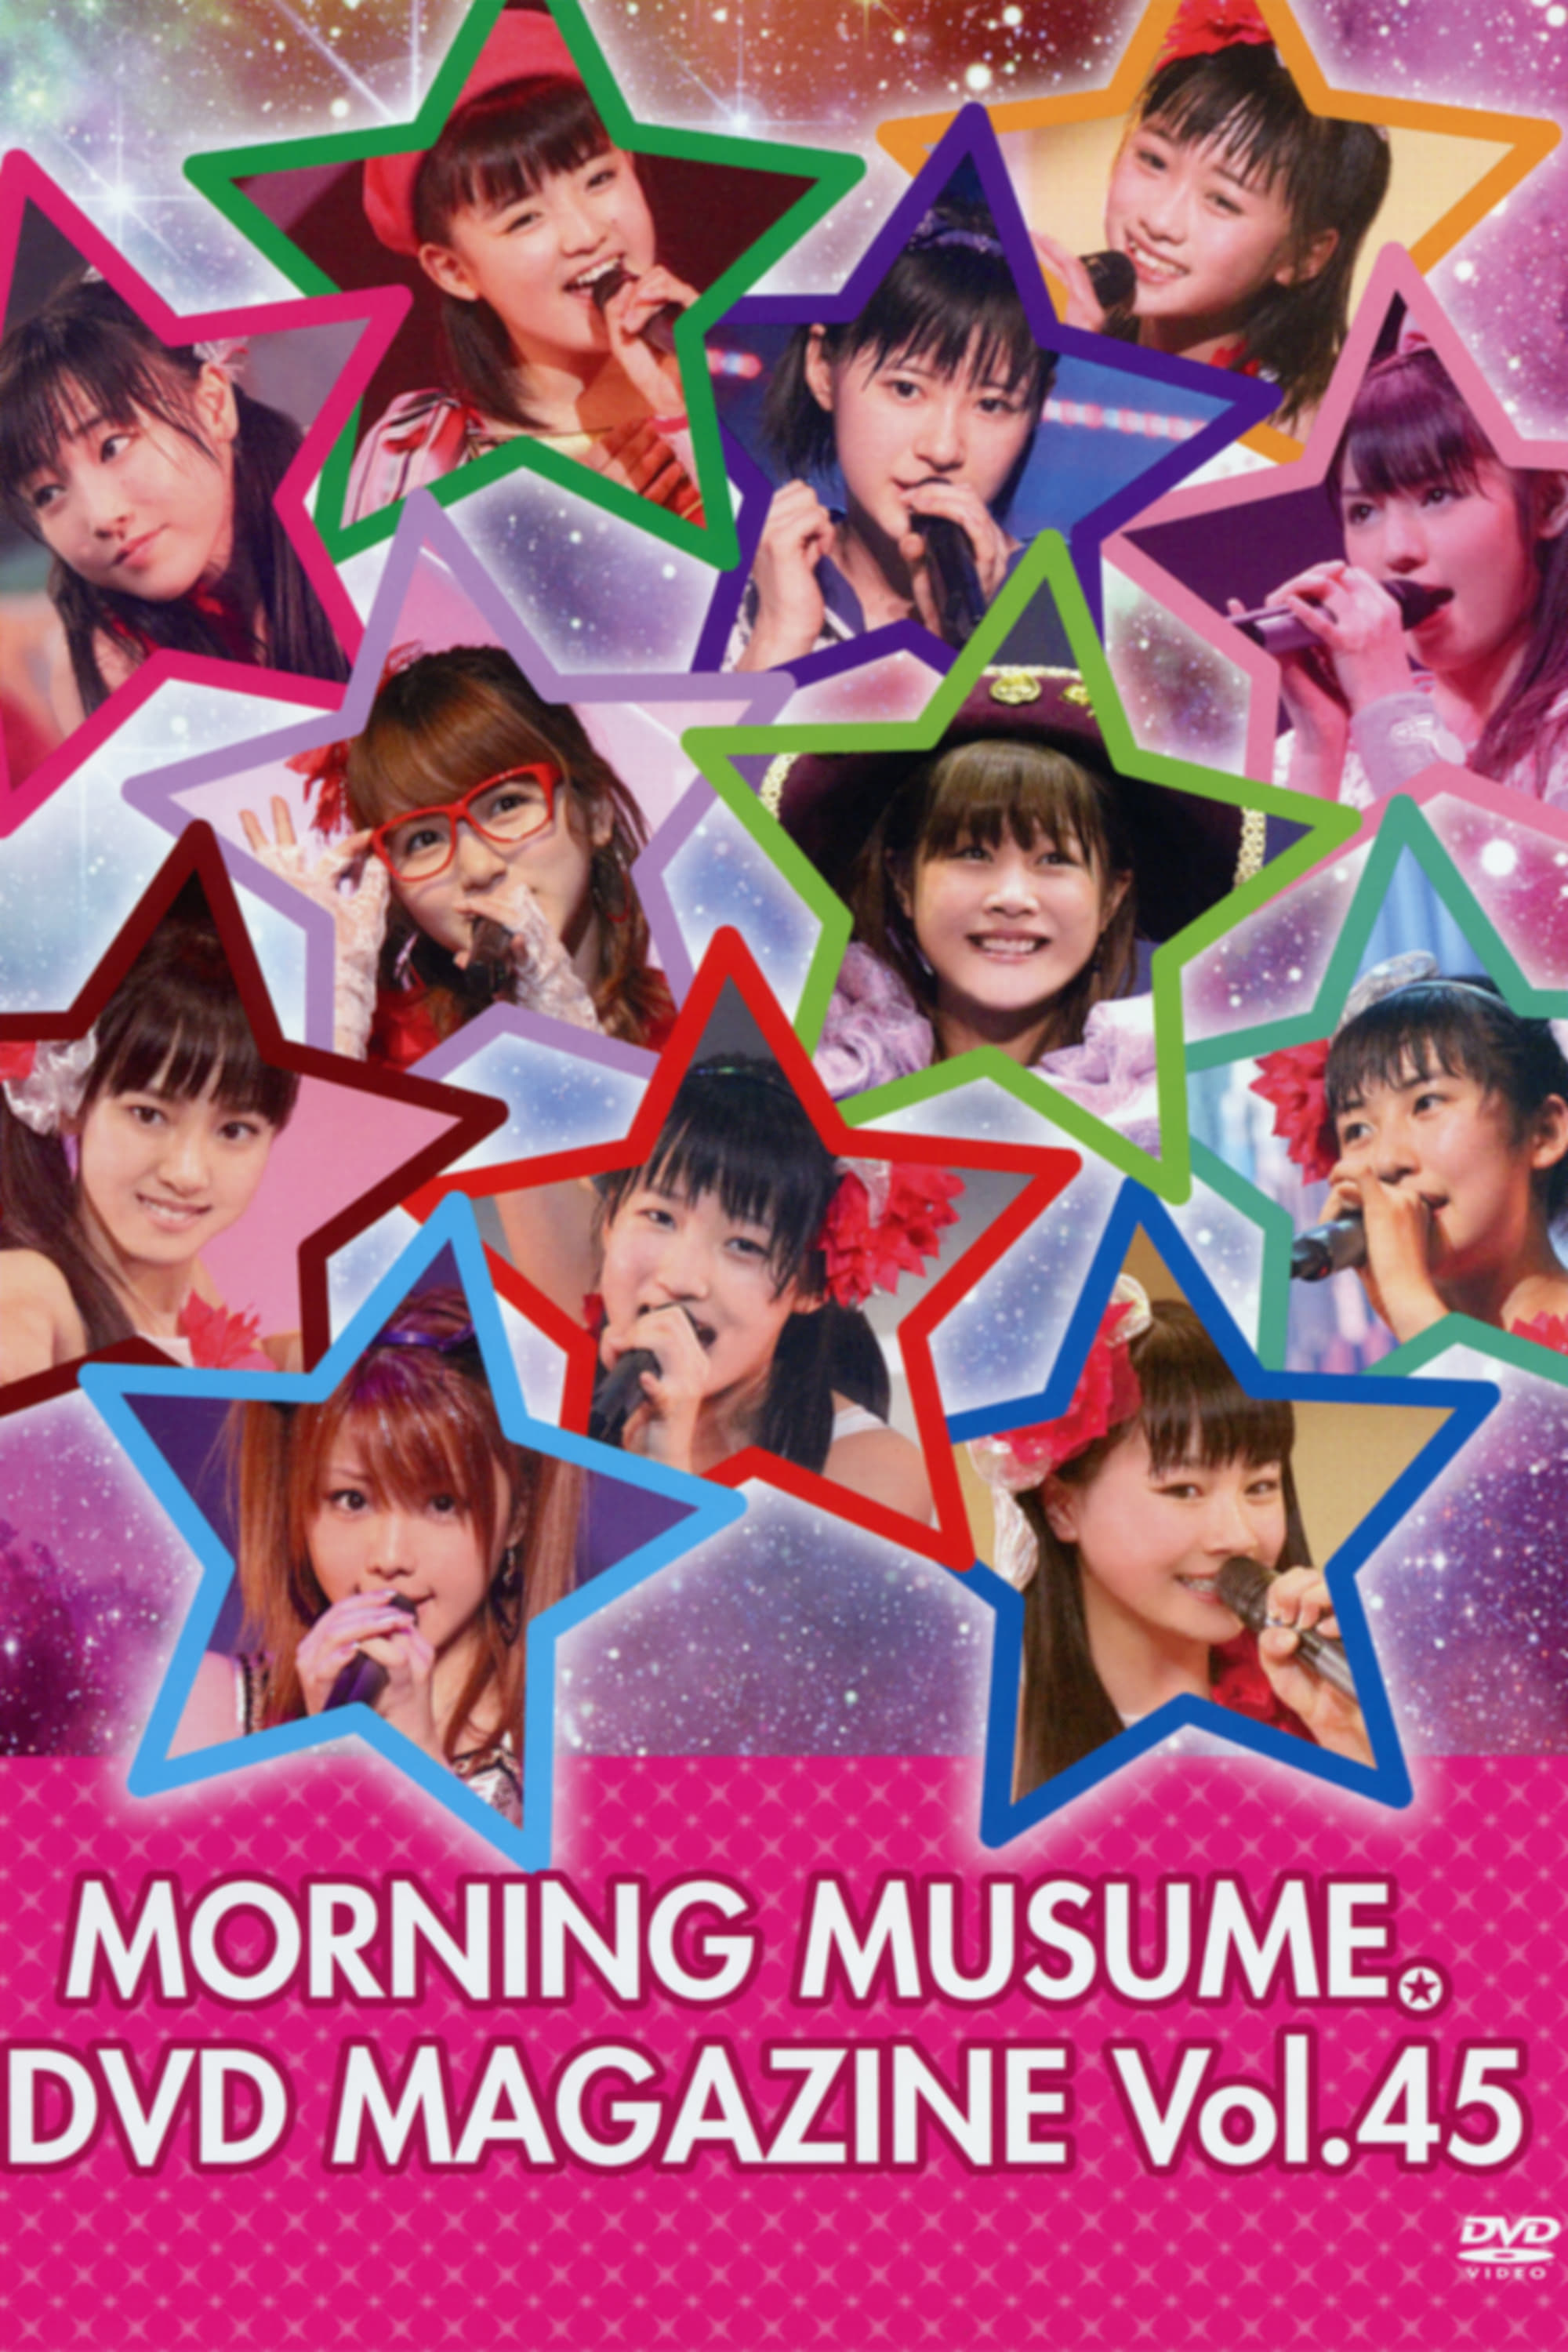 Morning Musume. DVD Magazine Vol.45